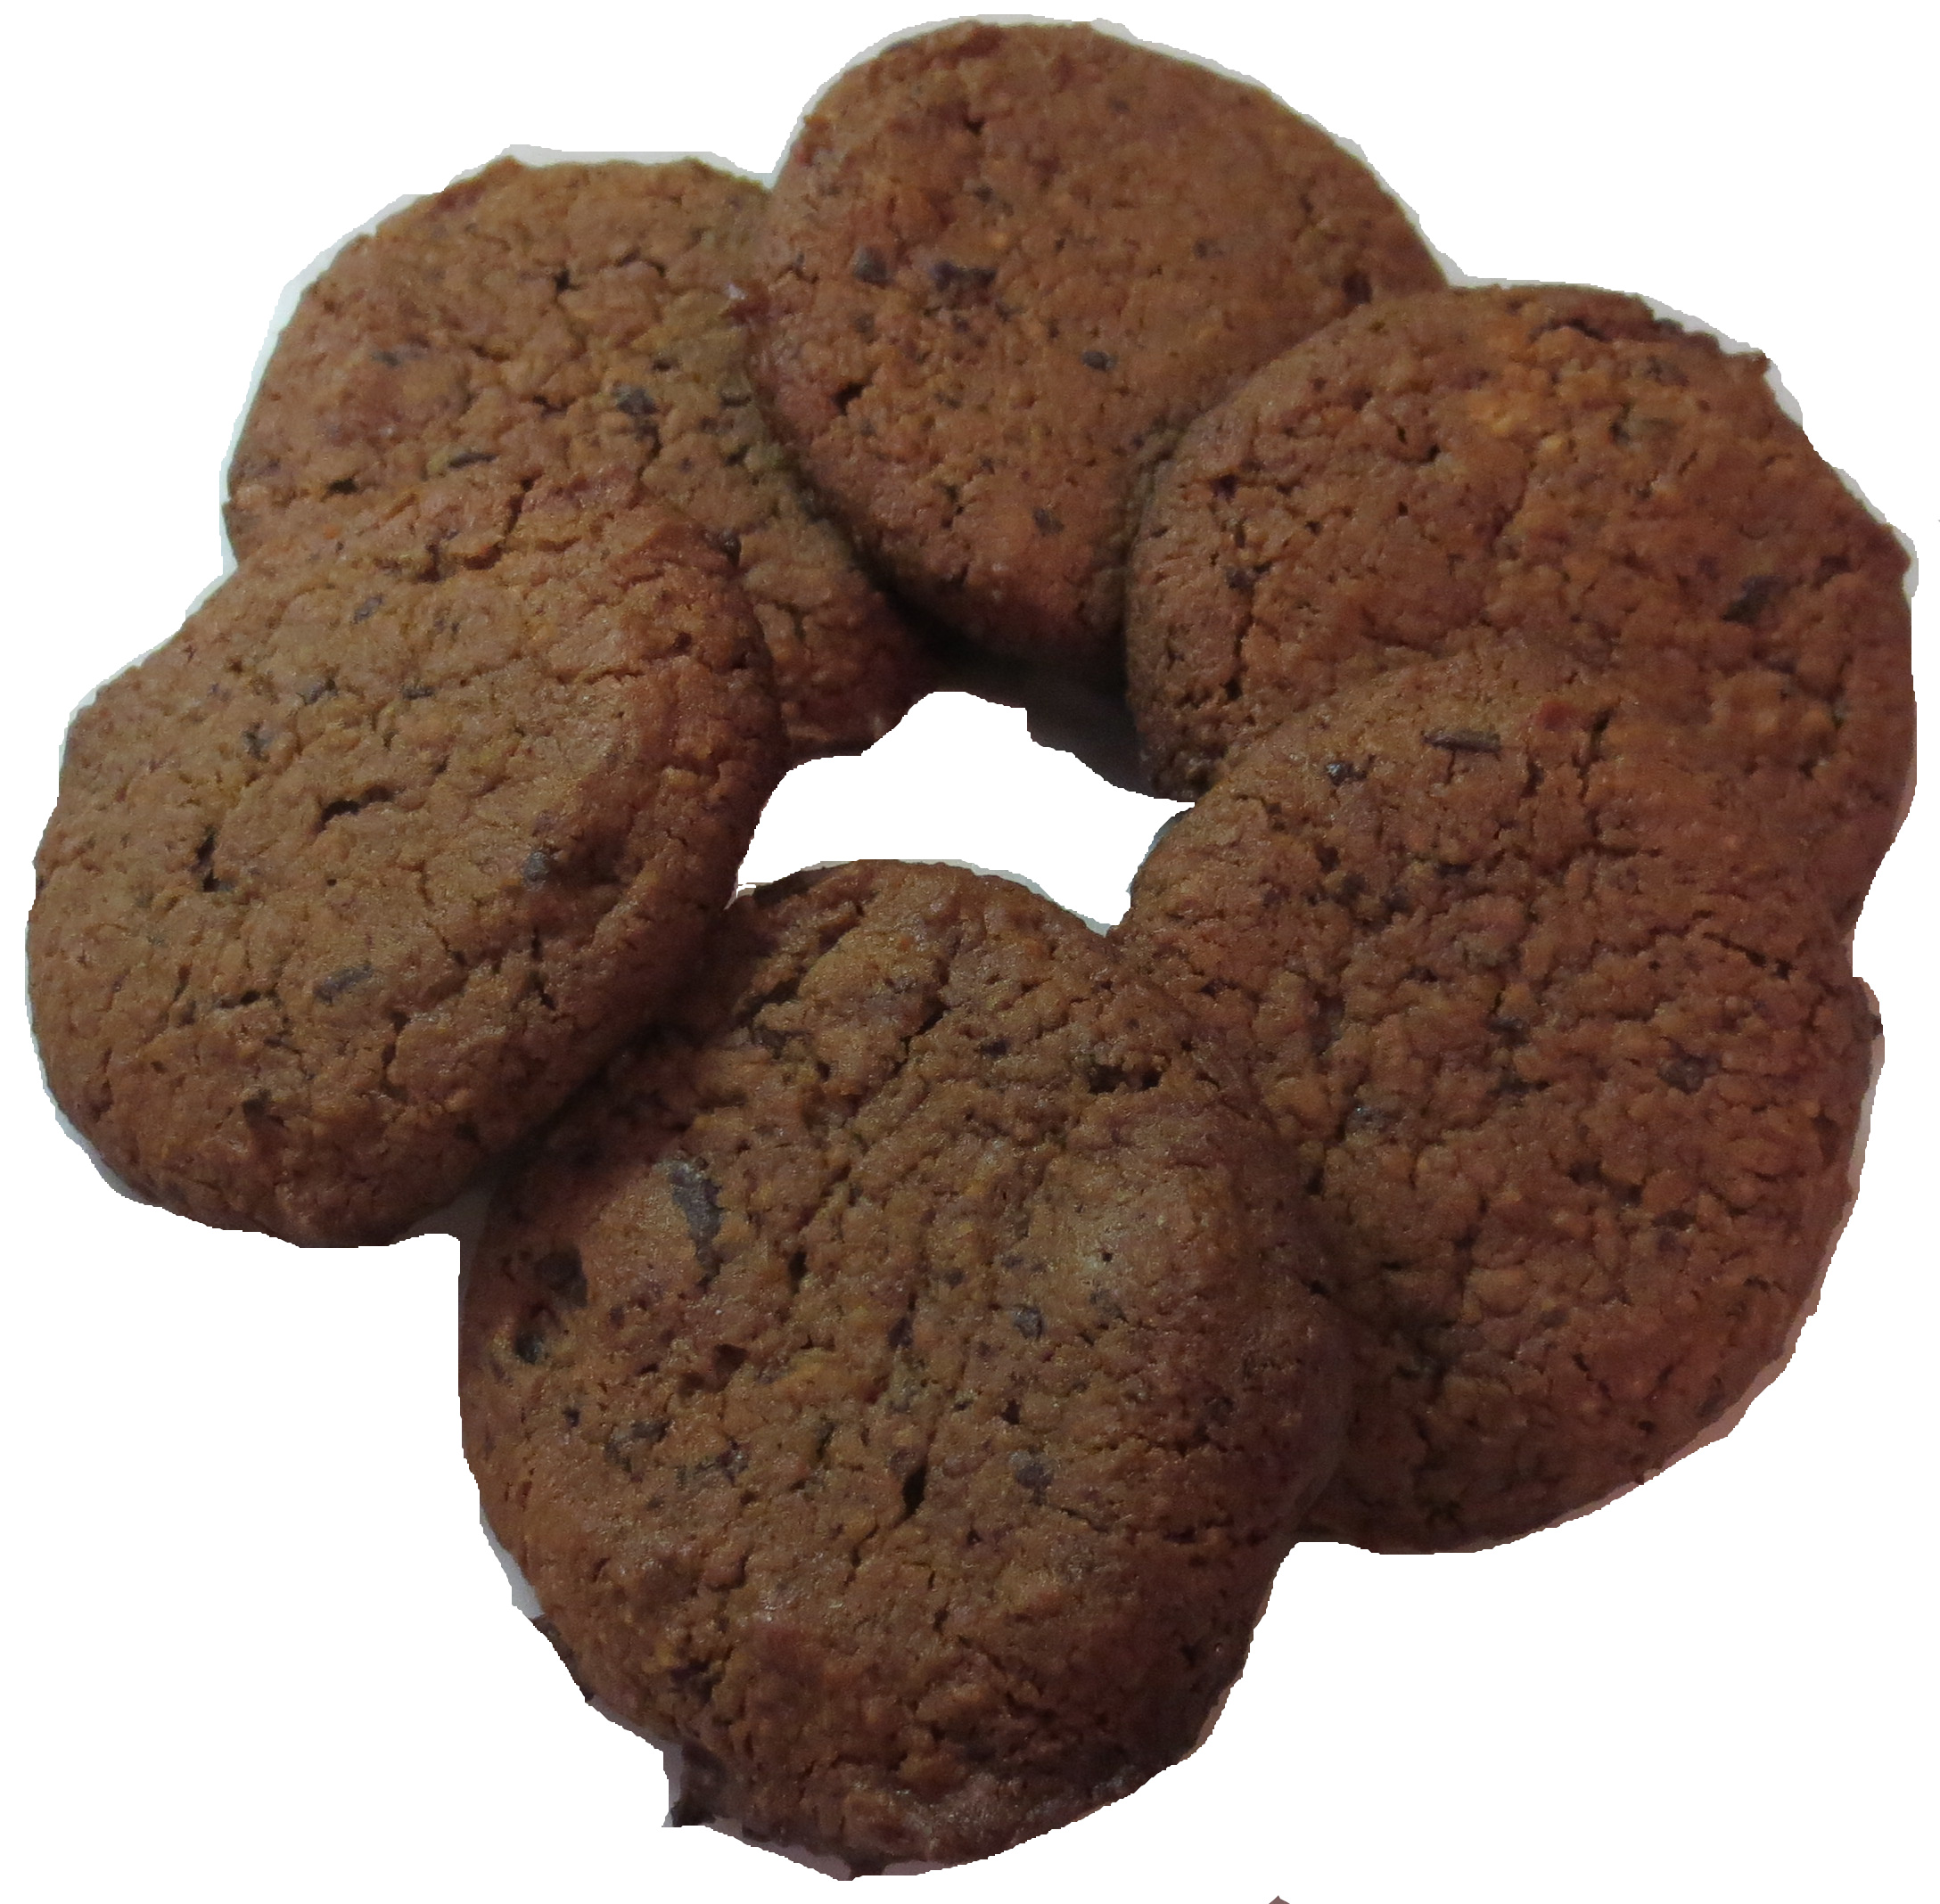 Vegan, Flourless Chocolate Chip Cookies